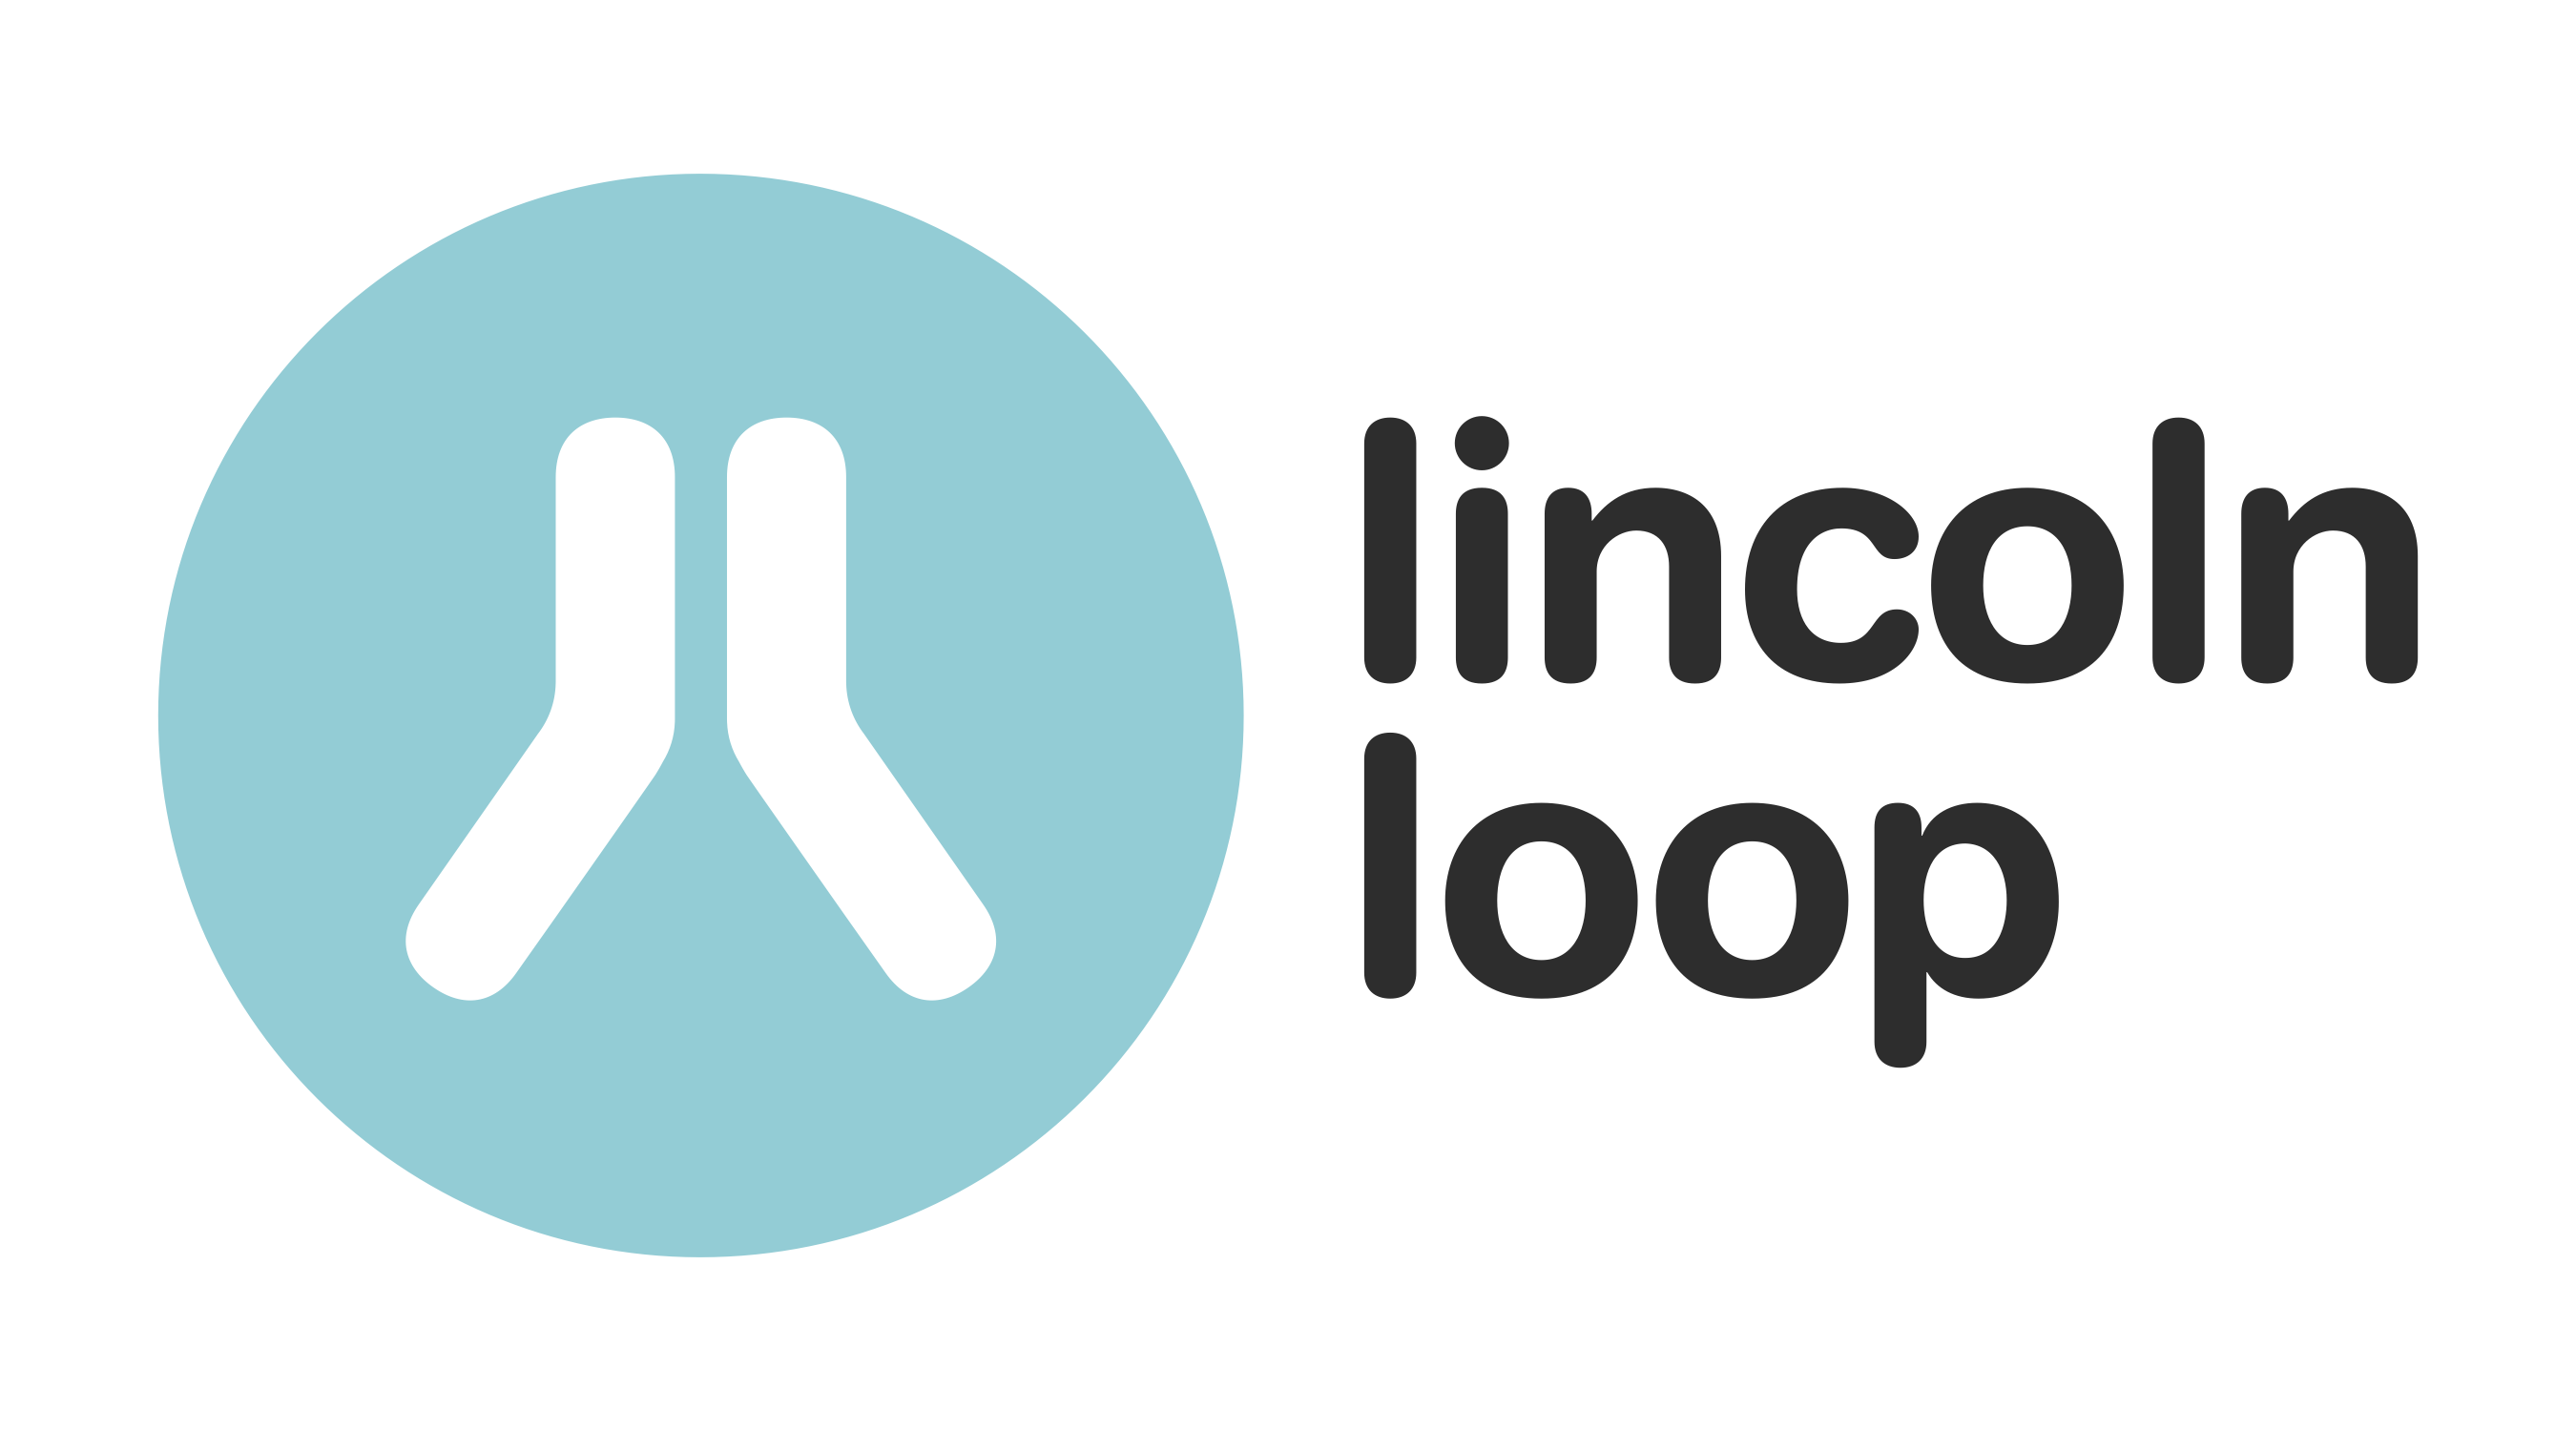 Lincoln Loop